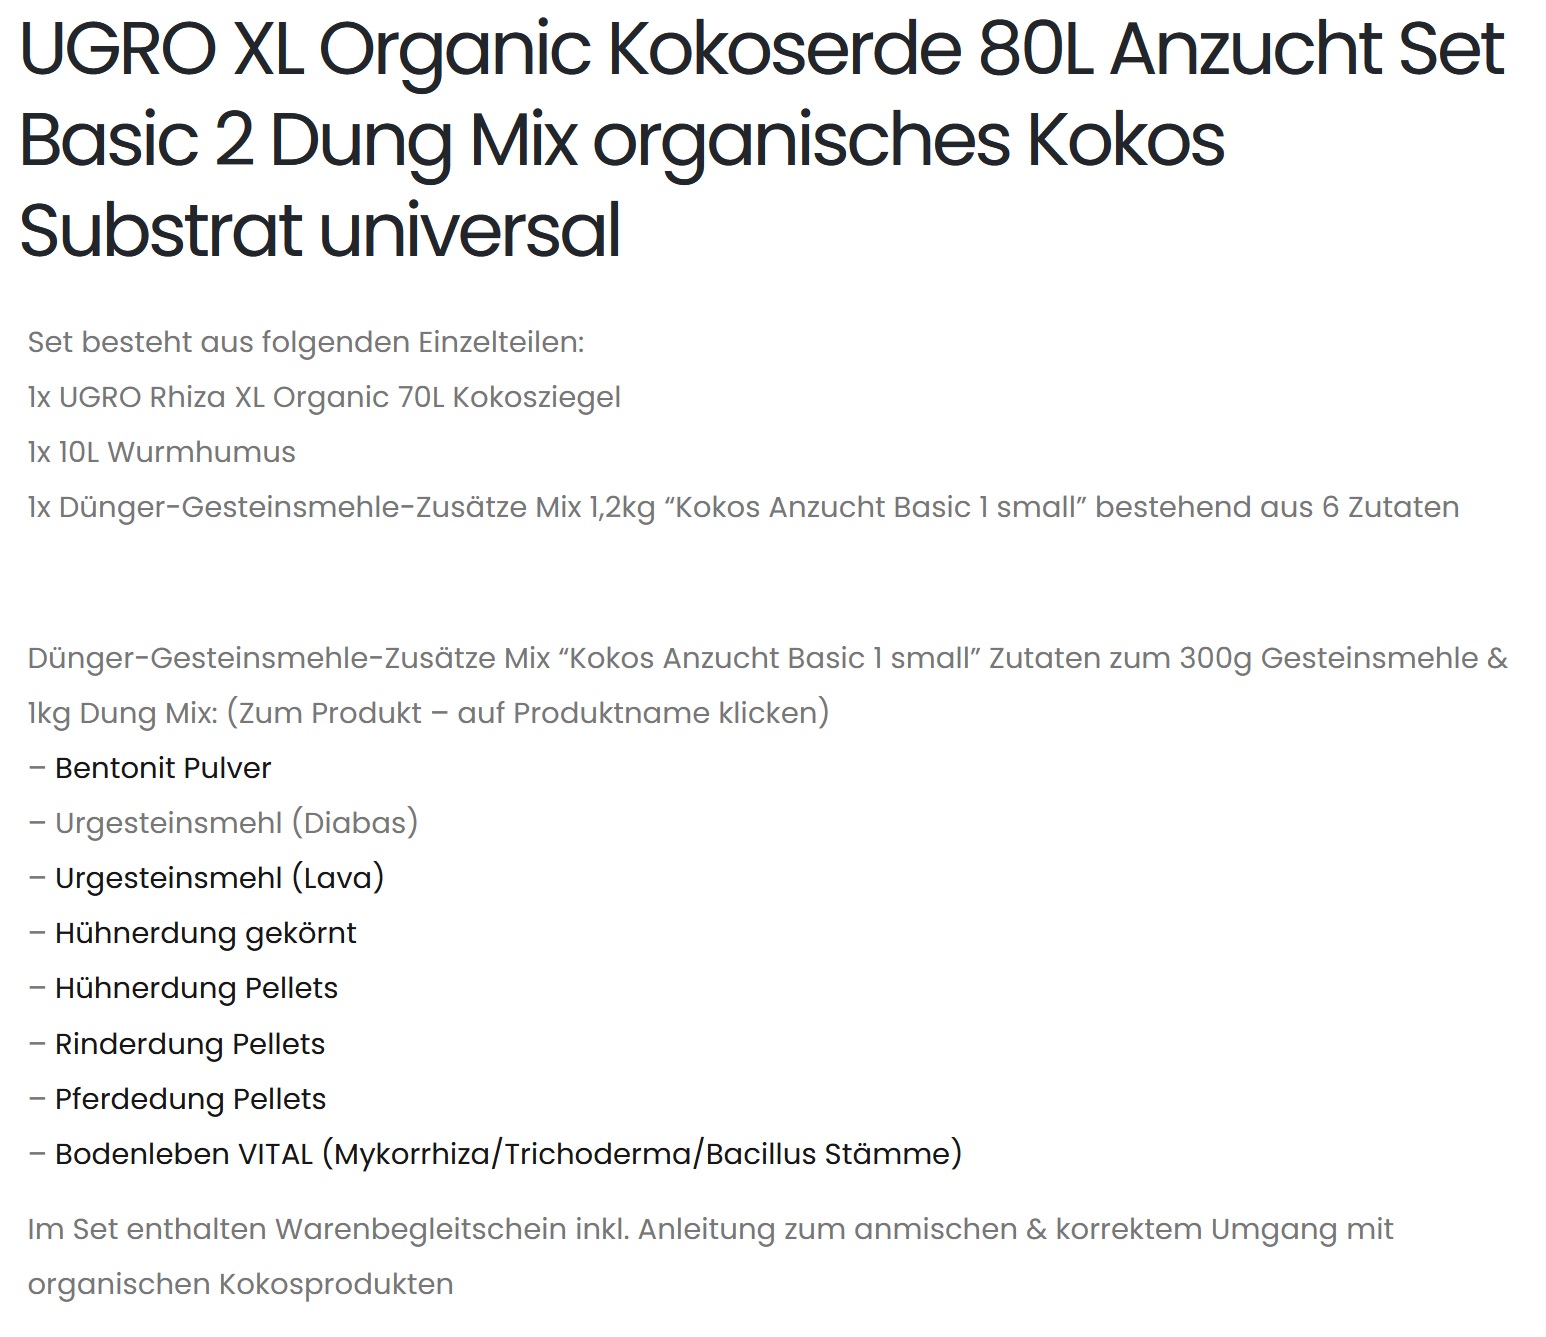 UGRO XL Organic Kokoserde 80L Anzucht Set Basic 2 Dung Mix organisches Kokos Substrat universal